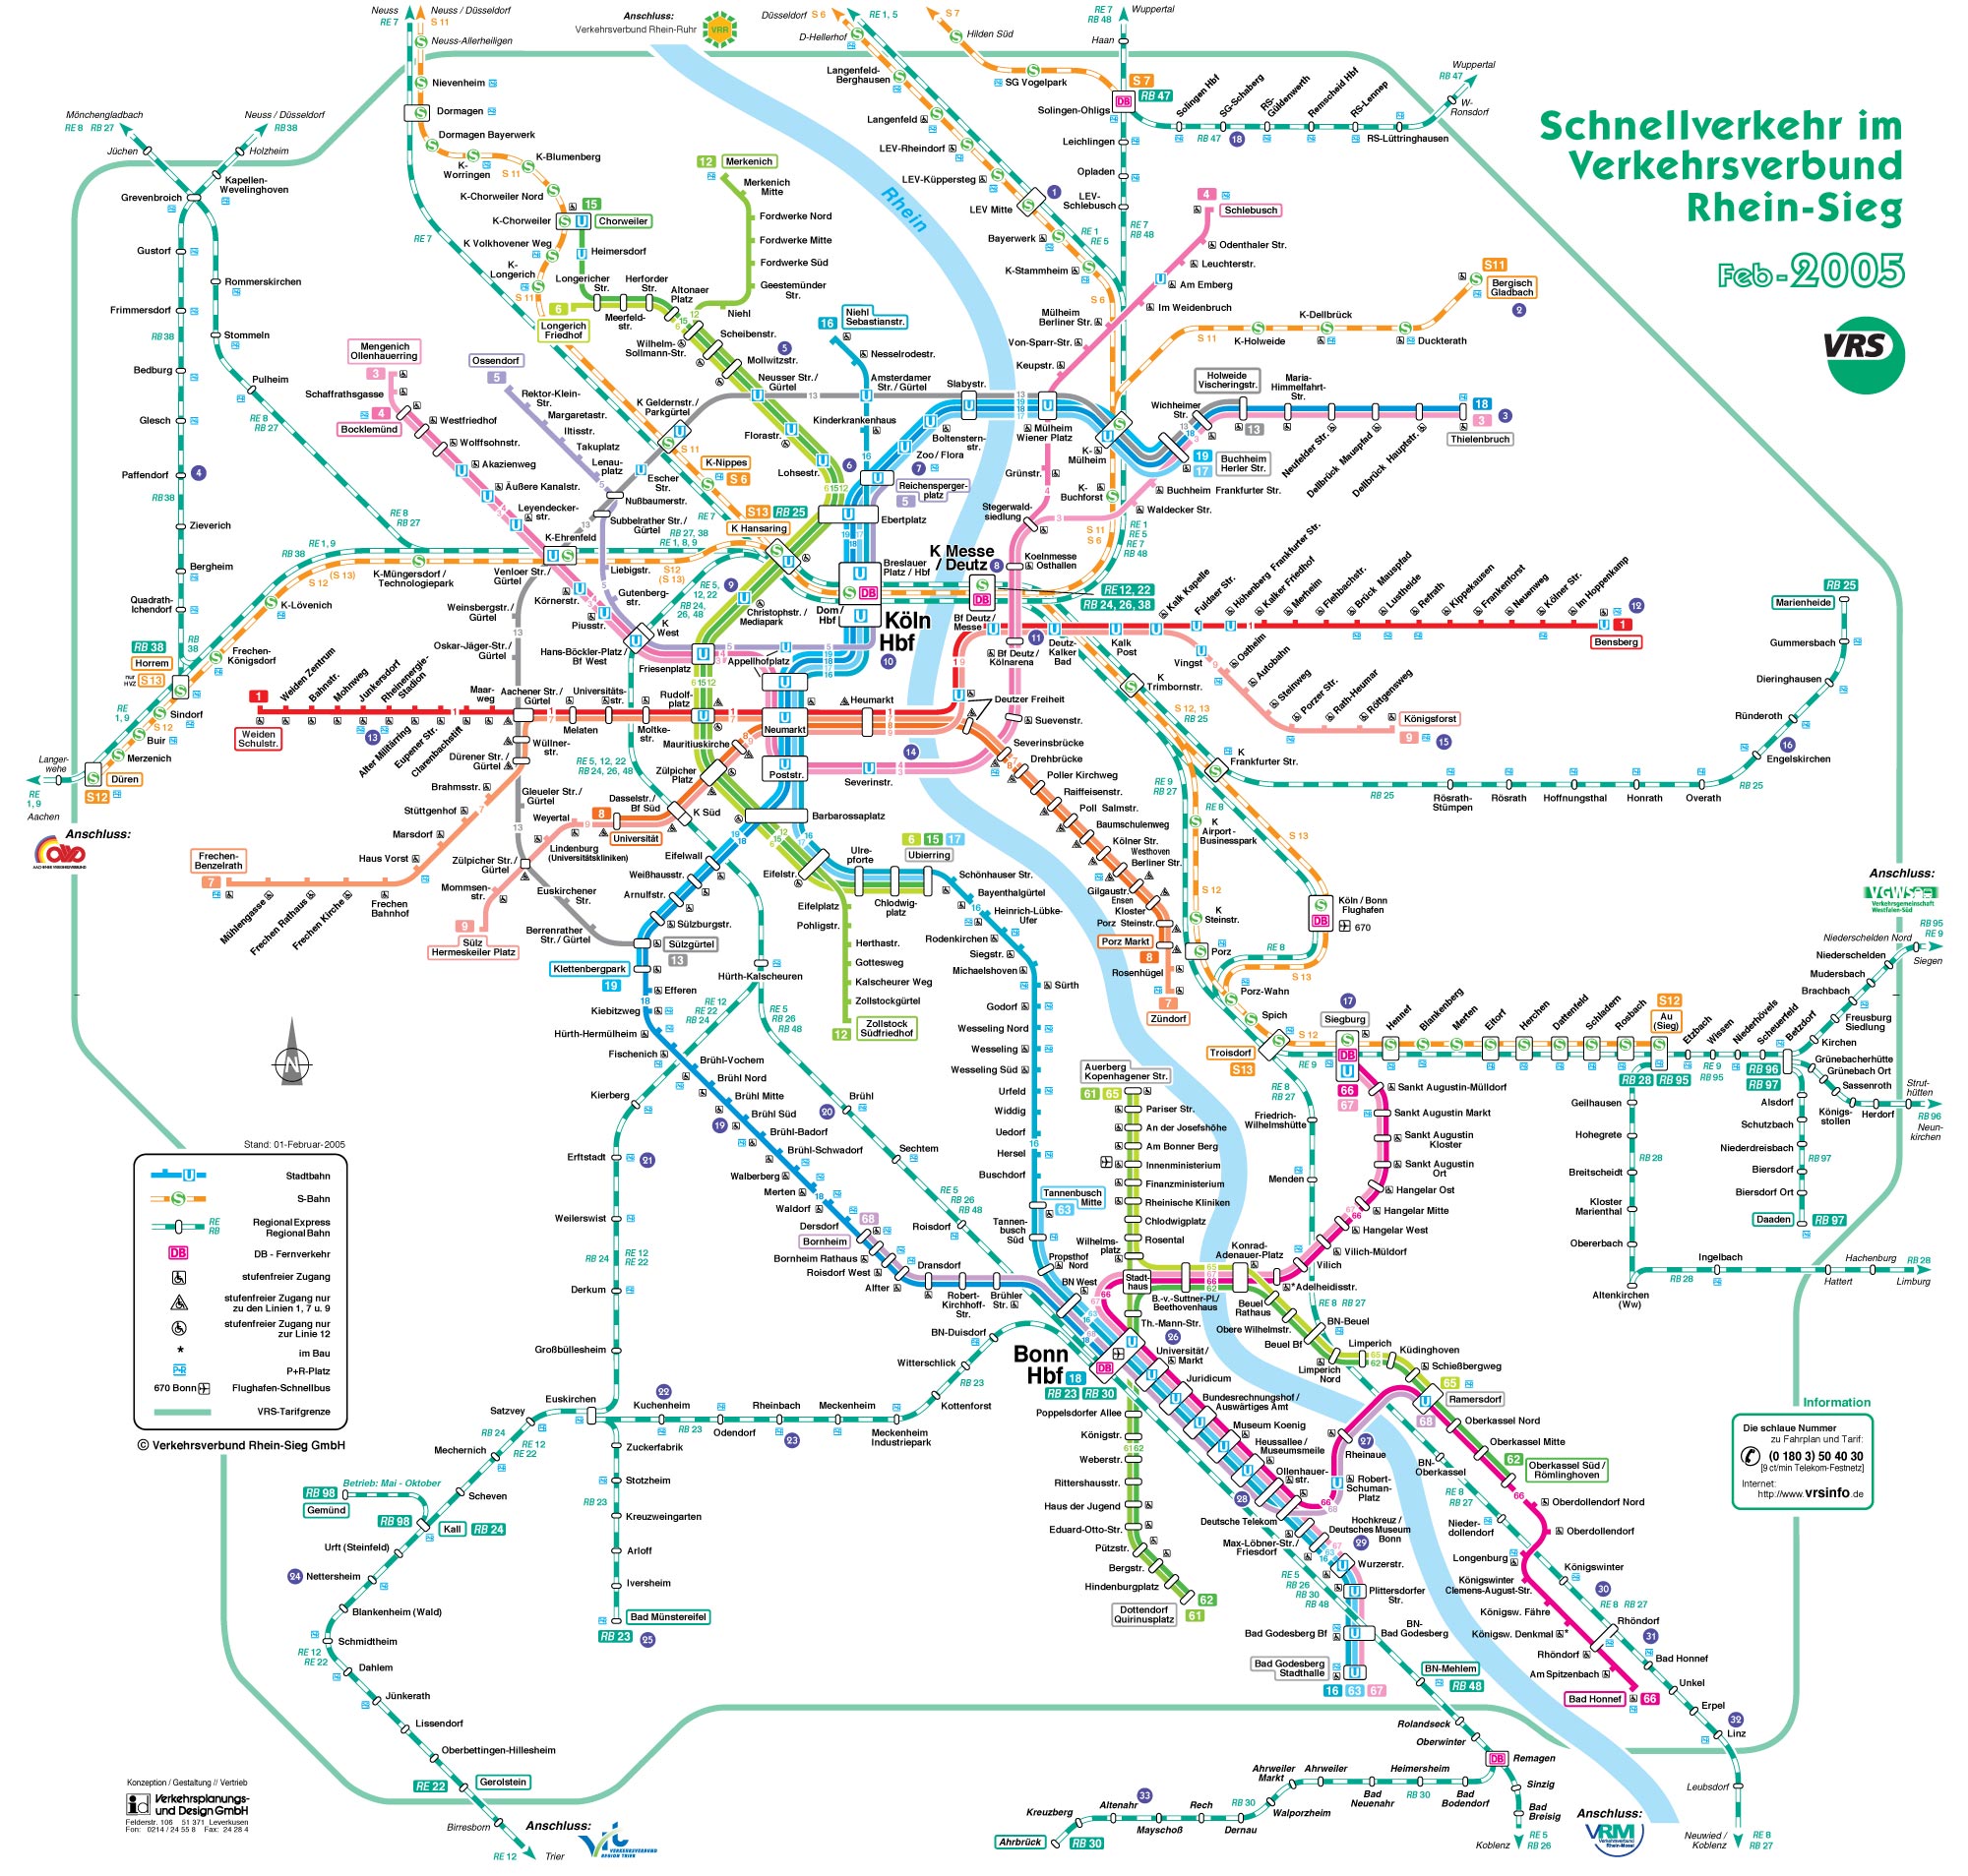 Подробная схема метро Кельна